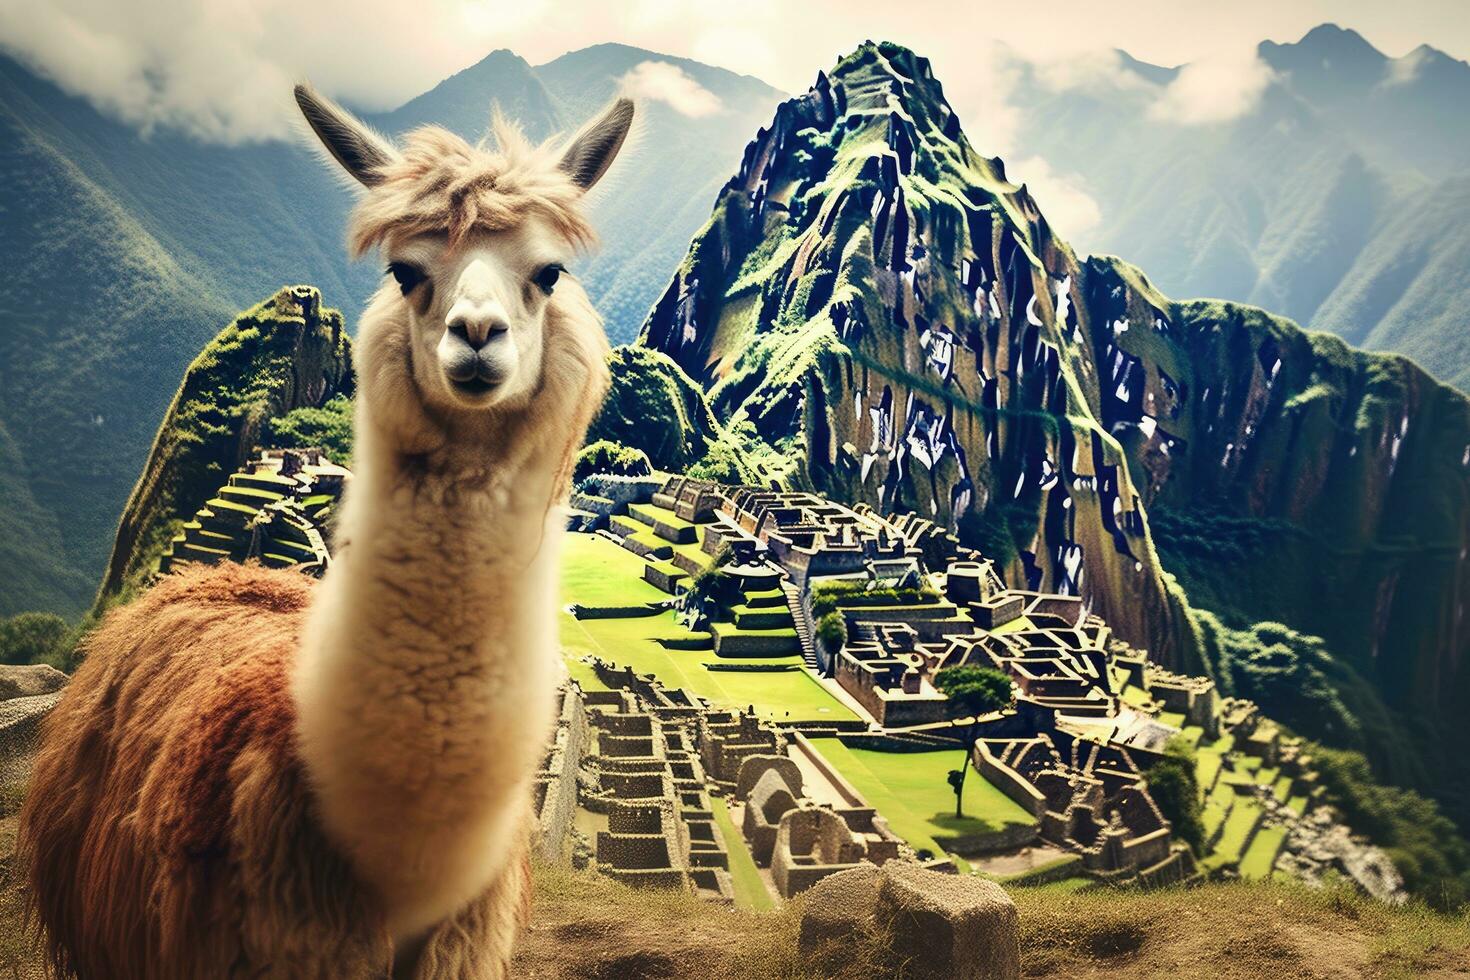 Llama in the ancient city of Machu Picchu, Peru, Lama And Machu Picchu, AI Generated photo